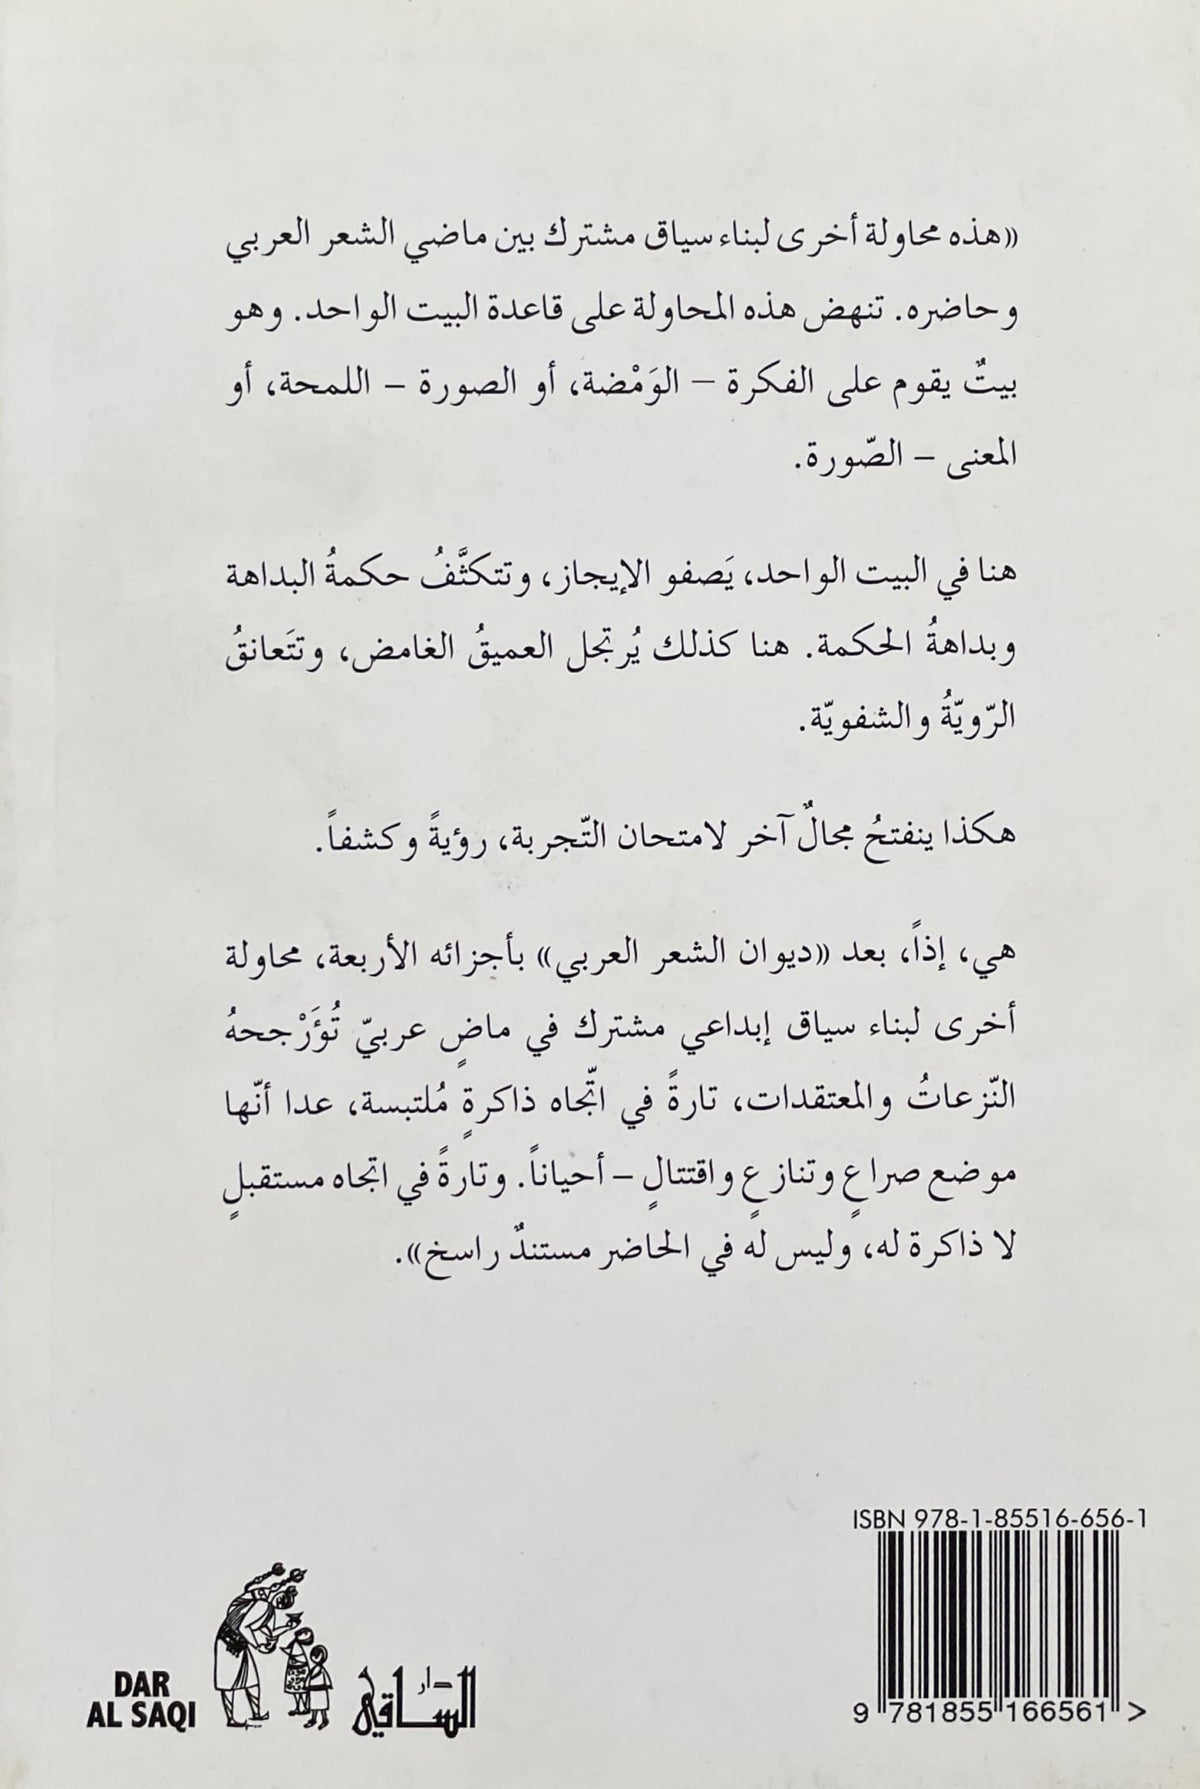 ديوان البيت الواحد في الشعر العربي